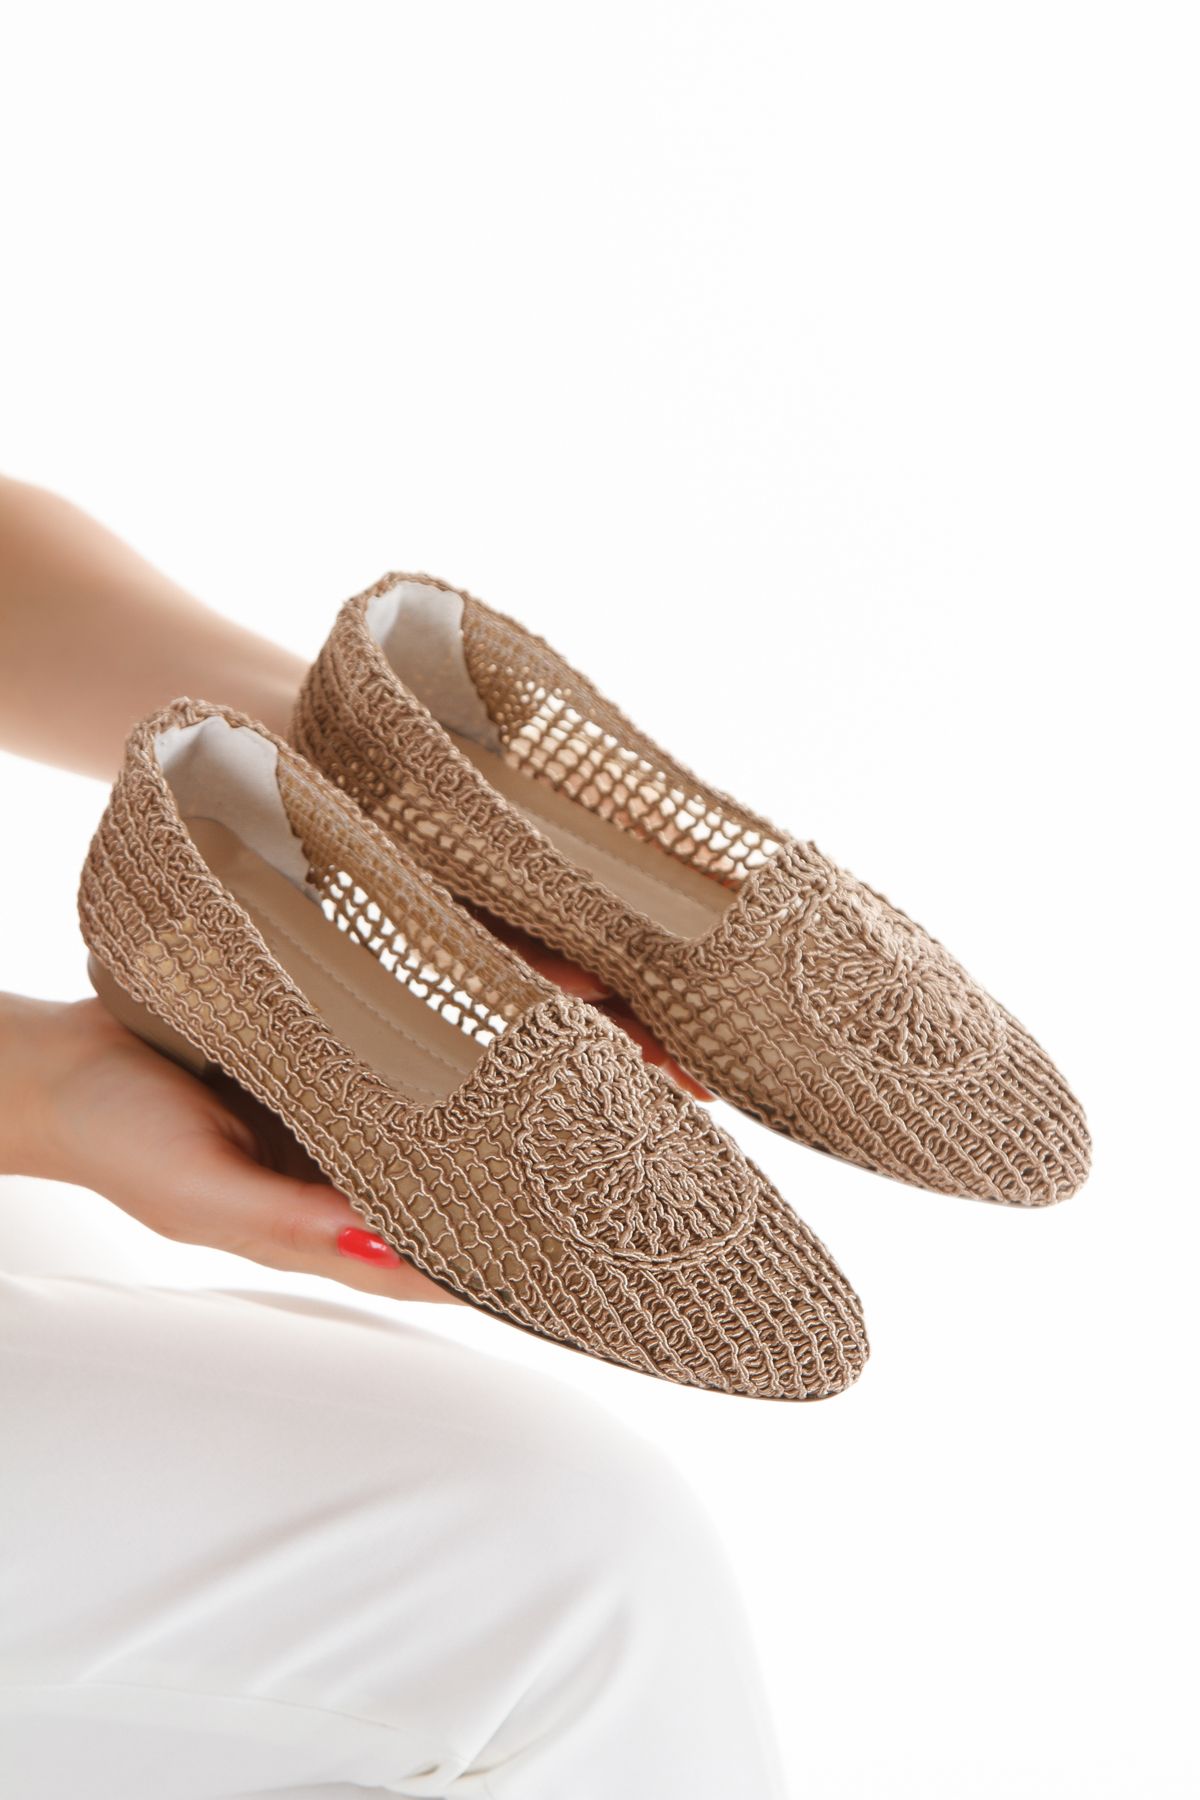 moun shoes Kadın Krem Hasır Babet Ayakkabı